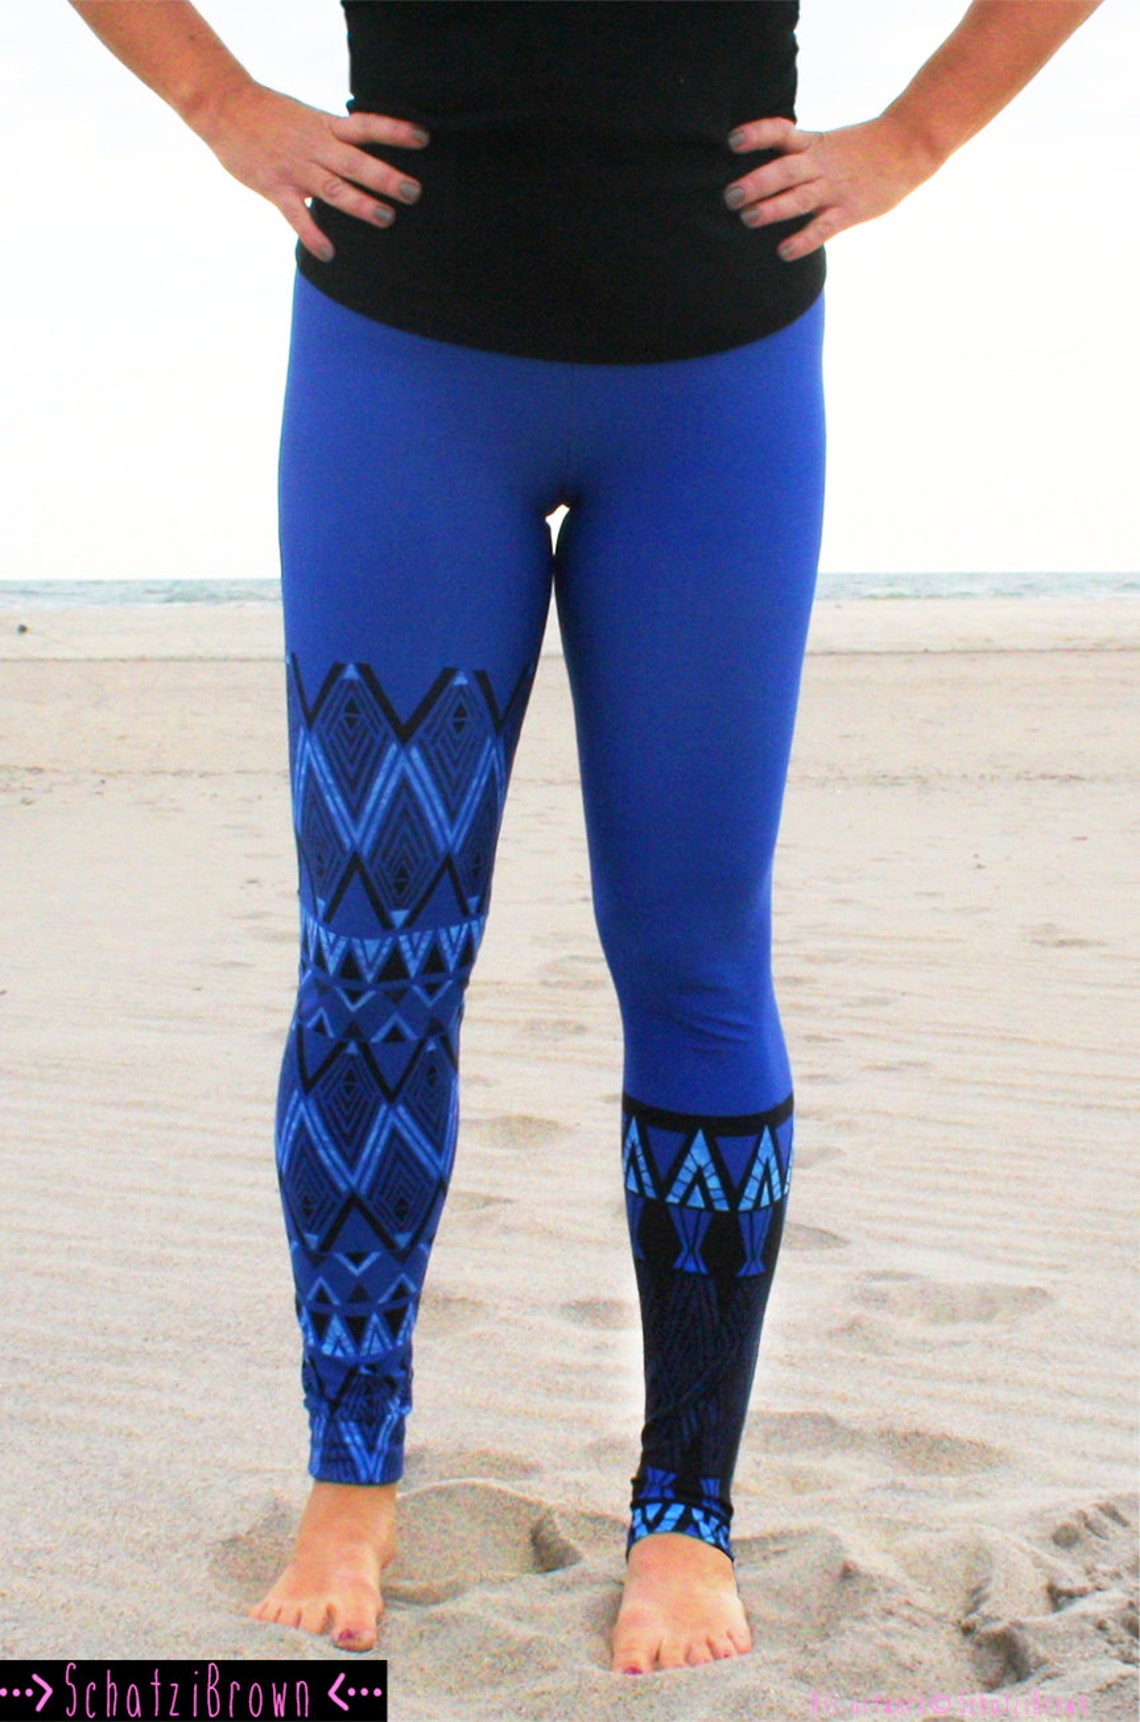 LEGGING FIJI Blue' Style Legging for SURF Yoga | Etsy